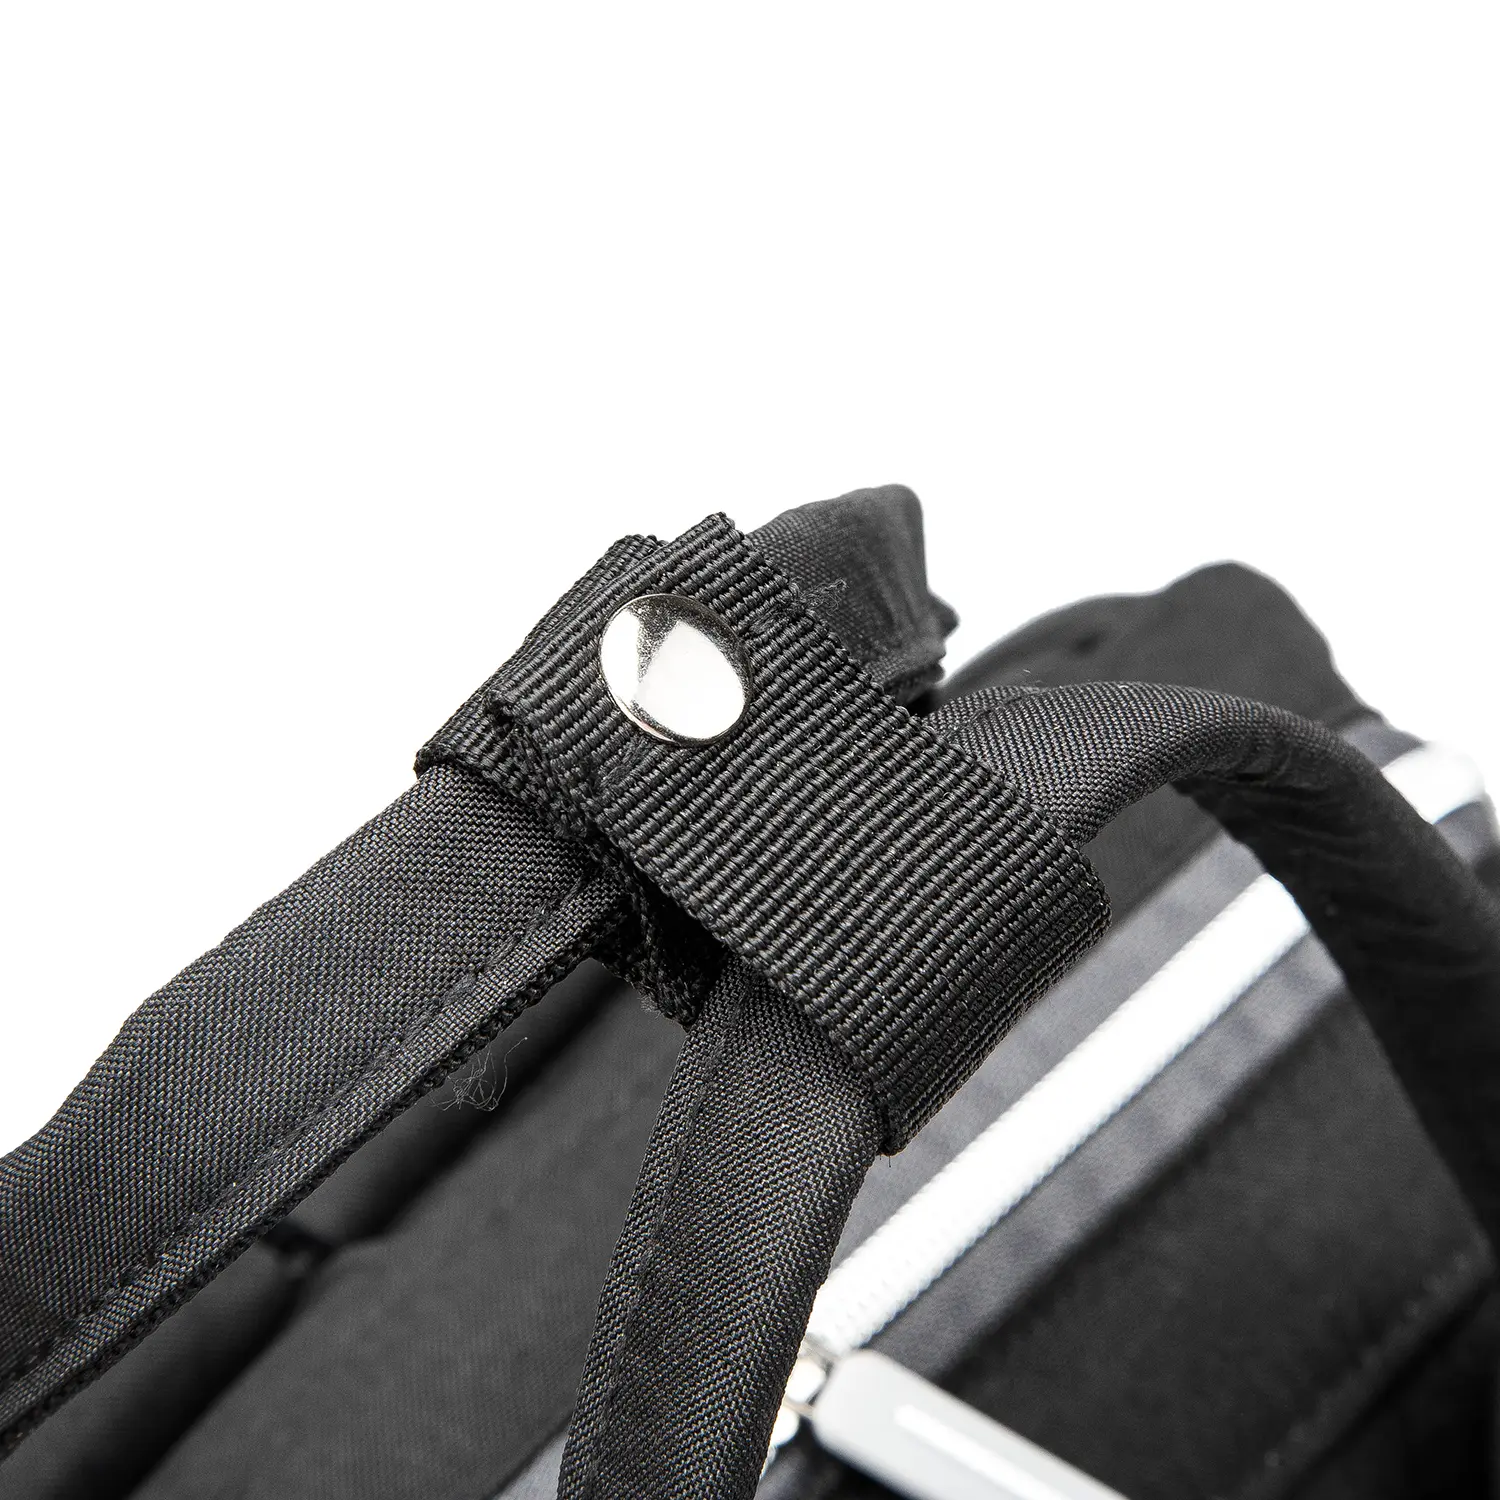 BaBee pelenkázó hátizsák, hátitáska, pelenkázótáska fekete színben (BABEE-M3-BLACK)